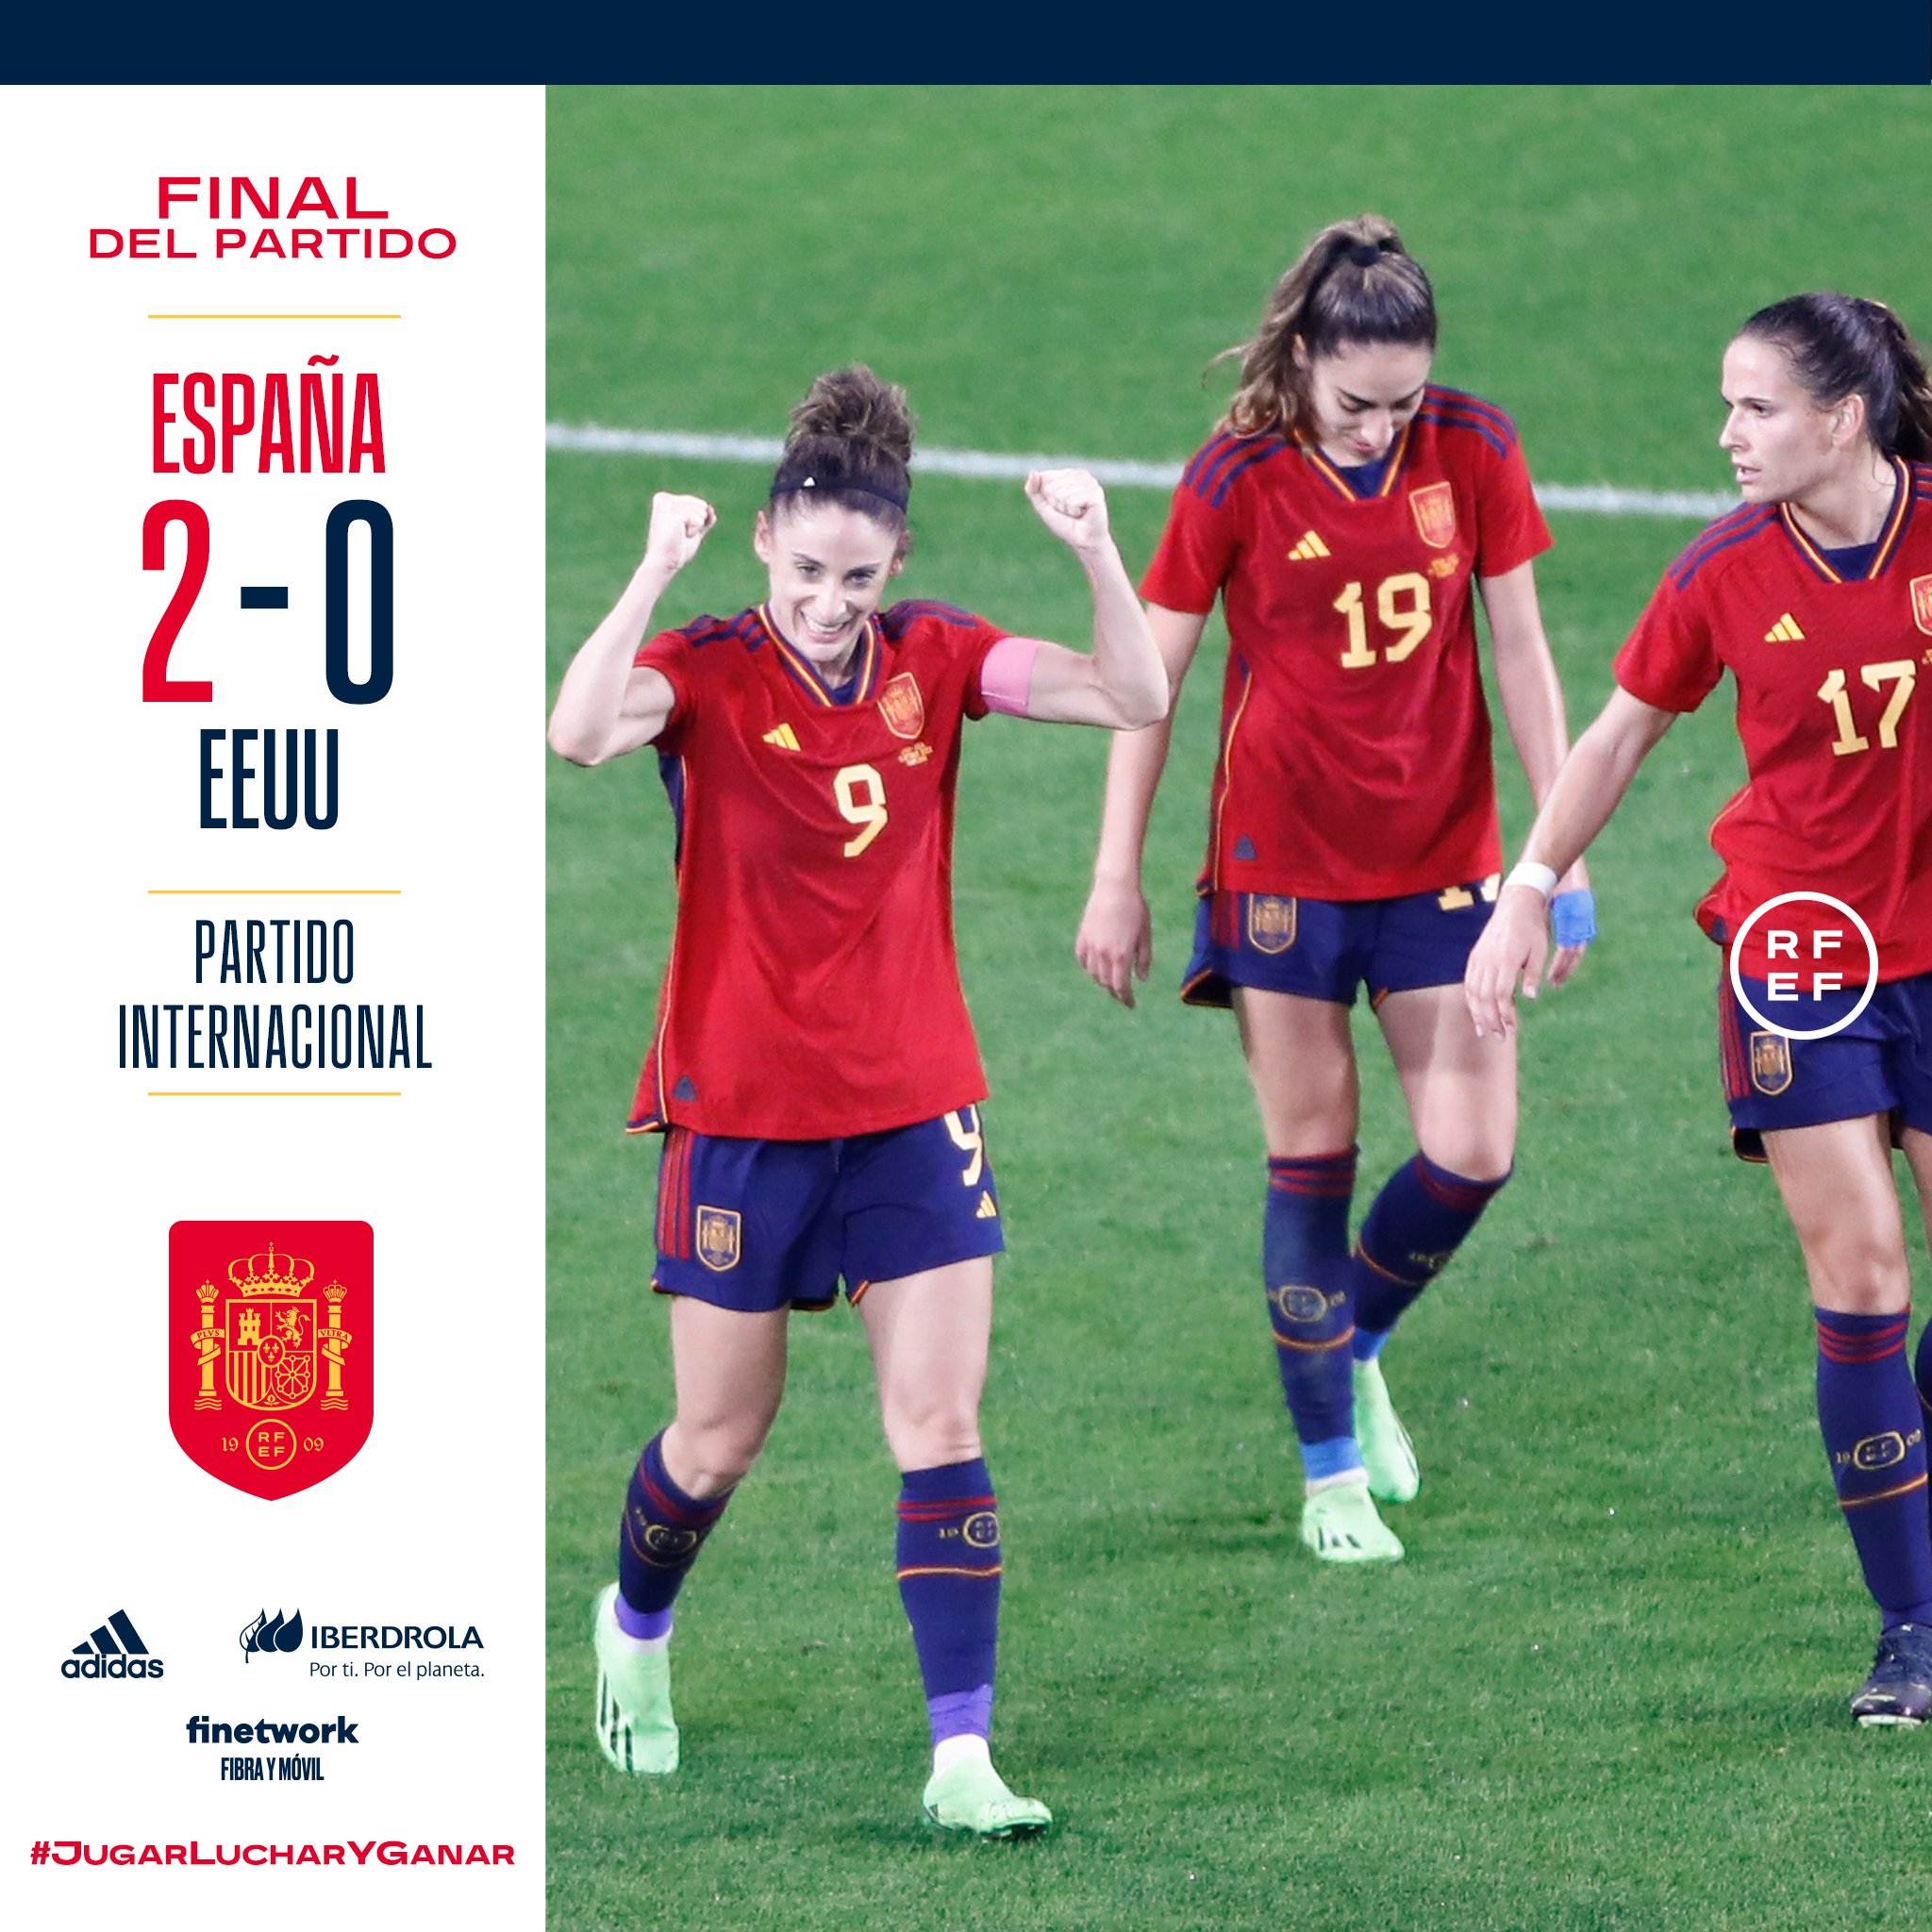 Selección Española Femenina Fútbol on Twitter: "🙌 ¡¡𝗙𝗜𝗡𝗔𝗔𝗔𝗟 𝗗𝗘𝗟 𝗣𝗔𝗥𝗧𝗜𝗗𝗢!! 😱 ¡HEMOS GANADO POR PRIMERA VEZ LA HISTORIA A ESTADOS UNIDOS! BATIDO UN NUEVO RÉCORD DE ASISTENCIA! 🔥 ¡¡𝗟𝗮